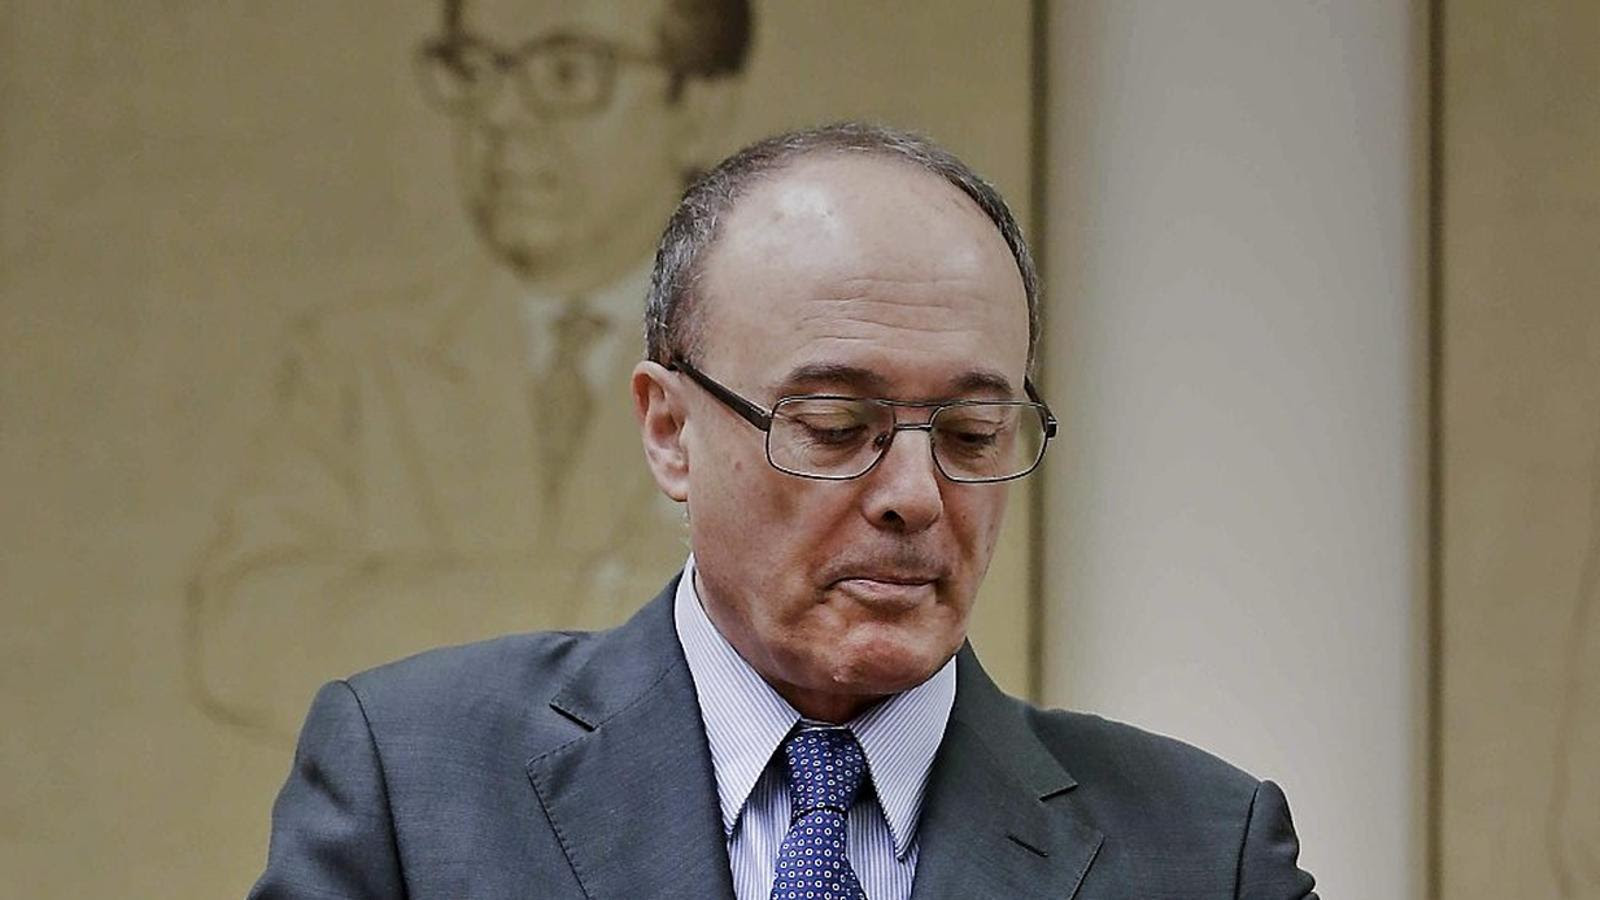 El governador del Banc d’Espanya, Luis María Linde, ha comparegut a la comissió del Pacte de Toledo. / EMILIO NARANJO / EFE